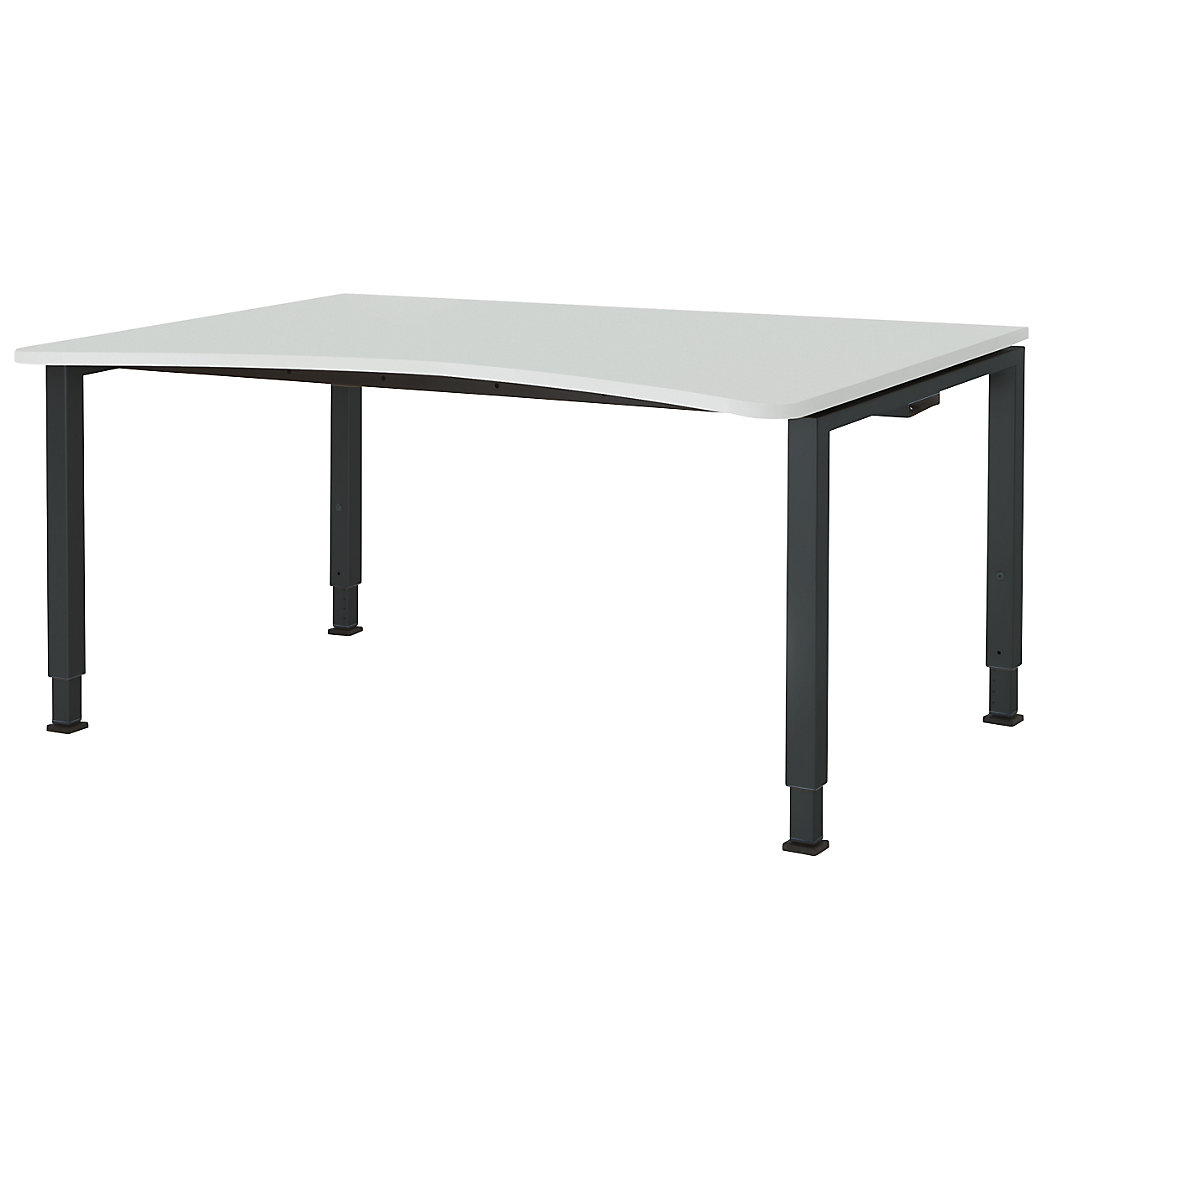 Designový stůl s přestavováním výšky – mauser